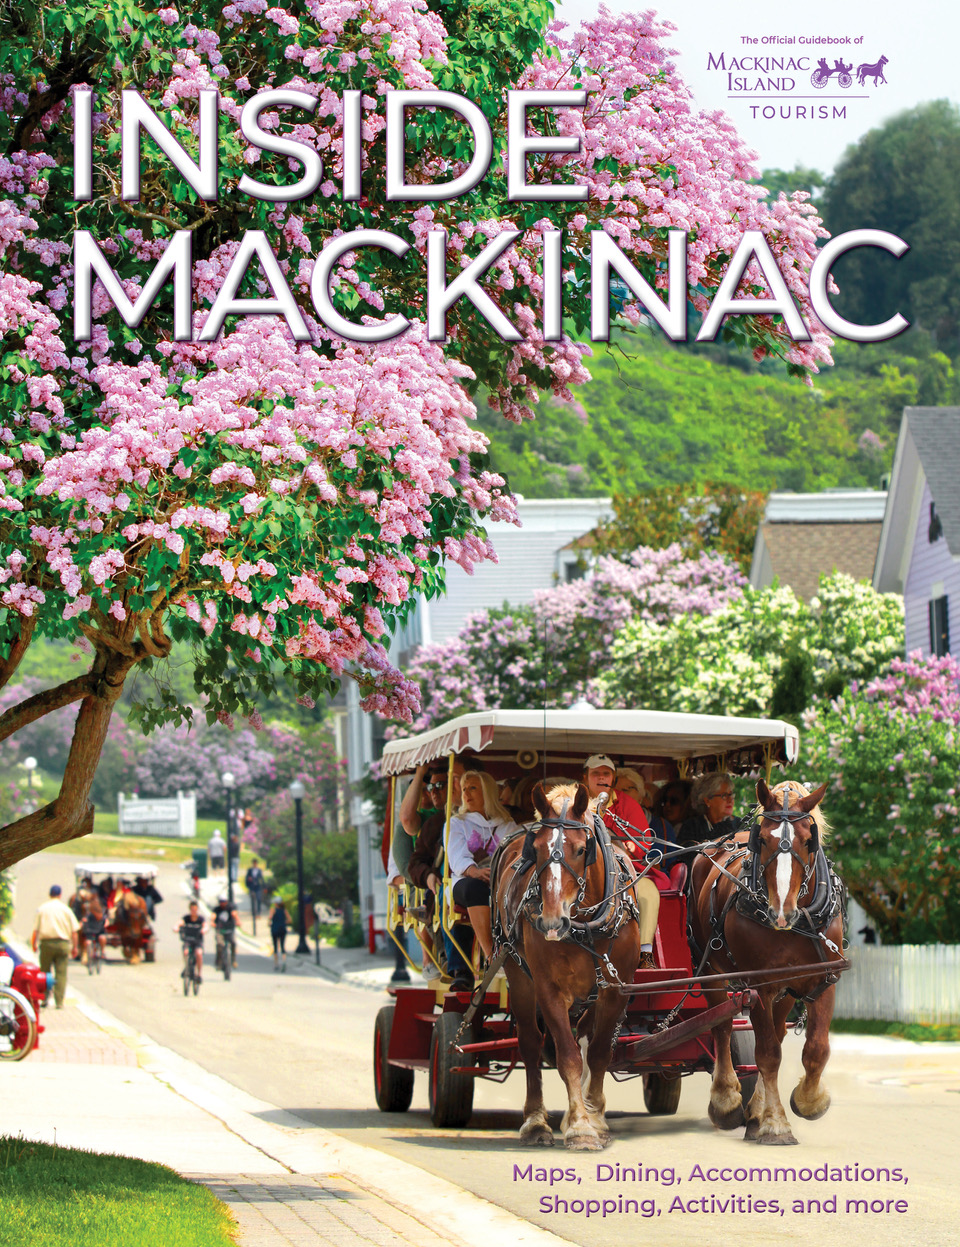 mackinac island carriage tours private